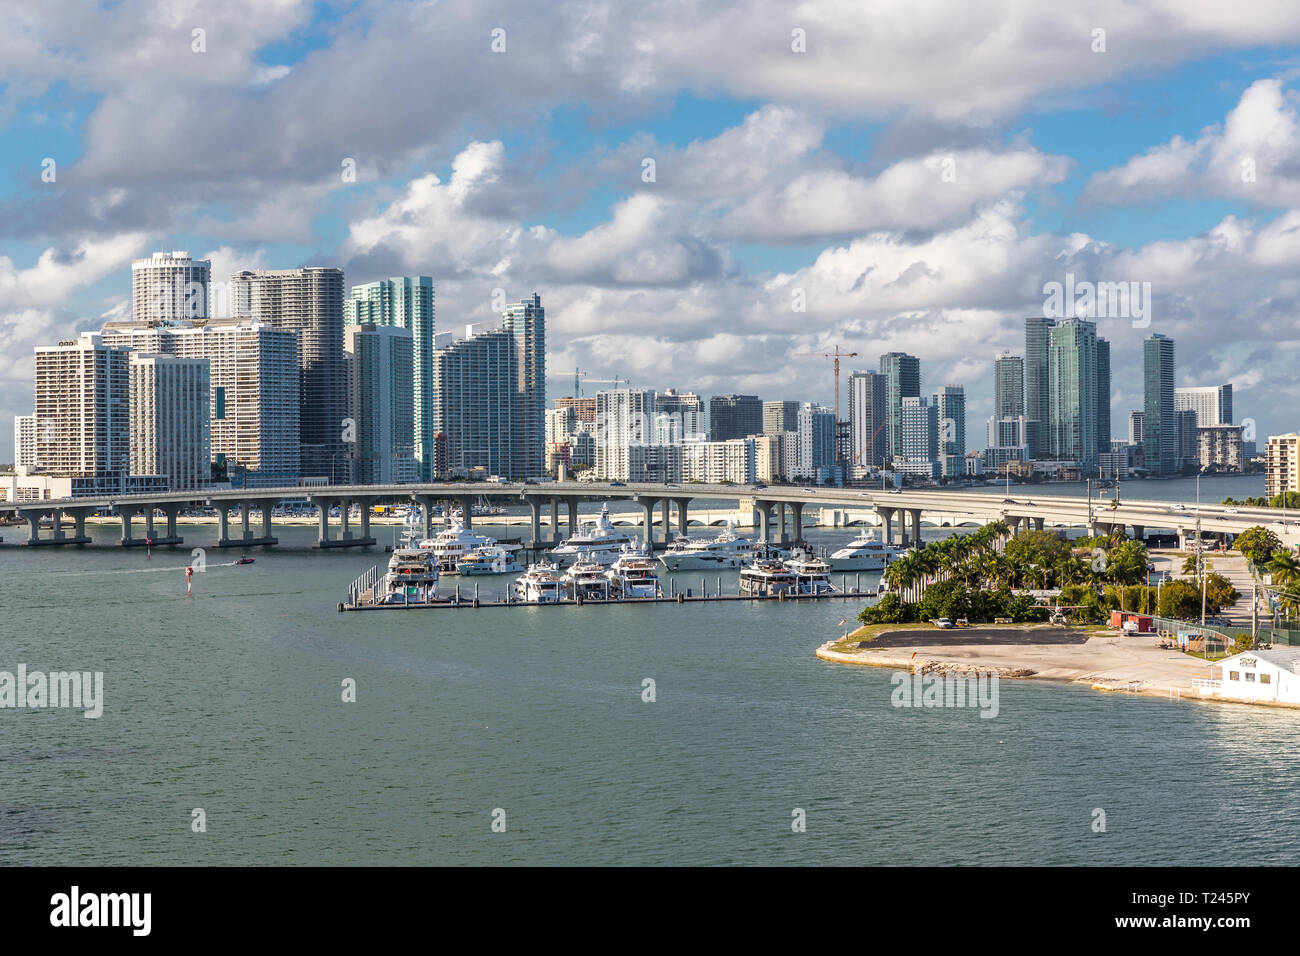 USA, Florida, skyline of Downtown Miami Stock Photo